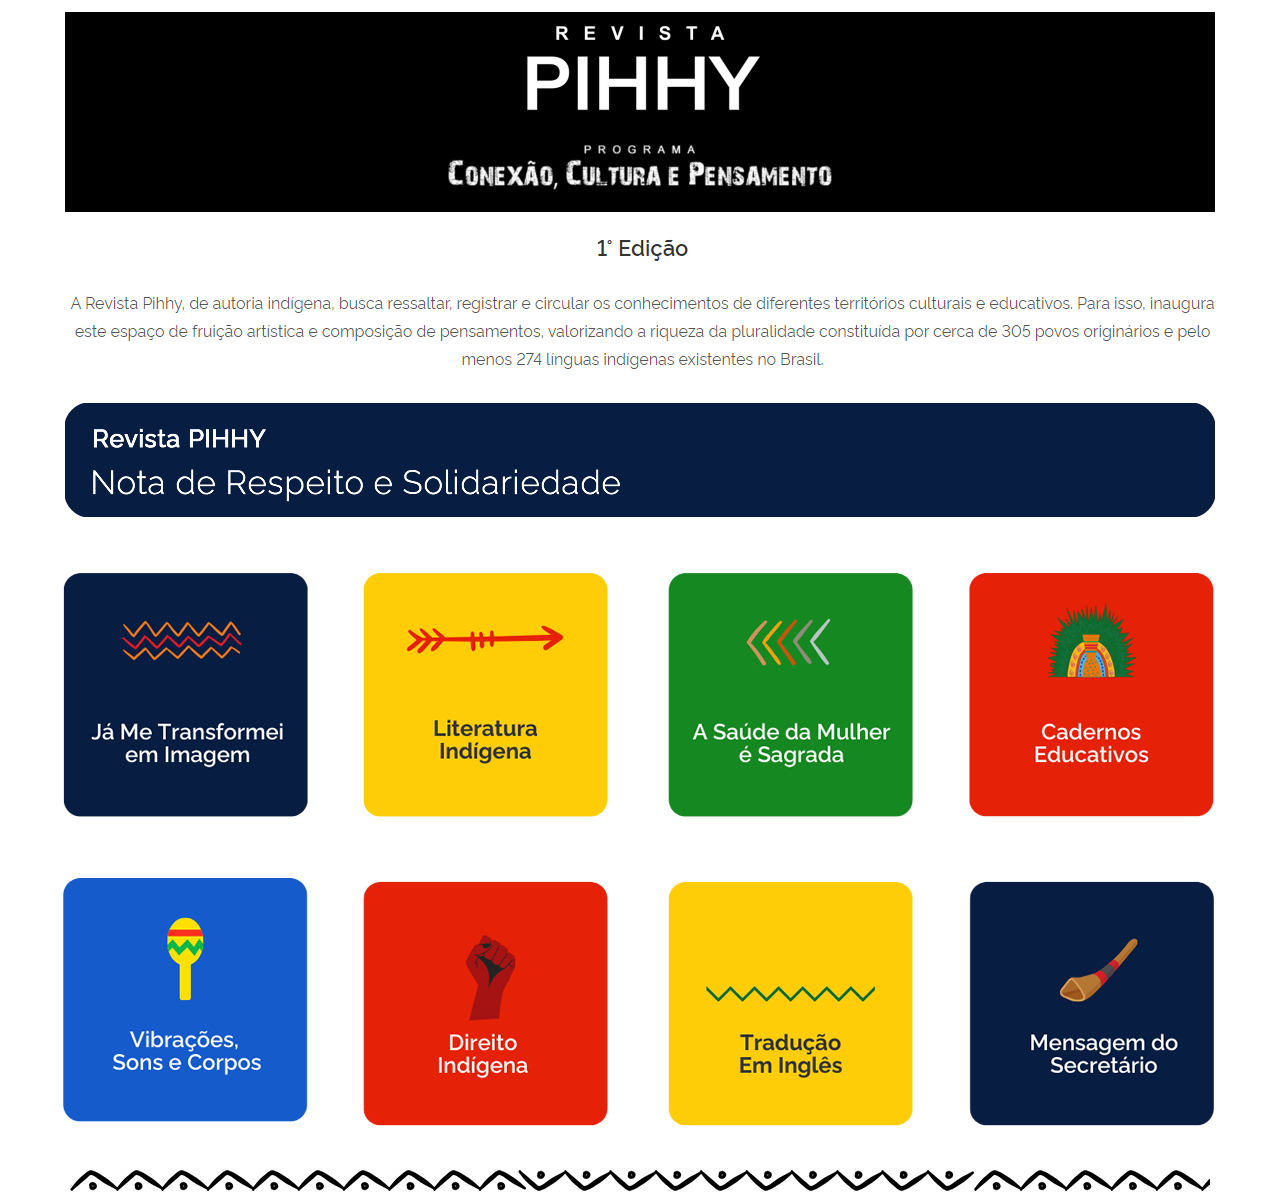 Pihhy-1 - Cards de categorias 21 Pihhy-1 - Cards de categorias